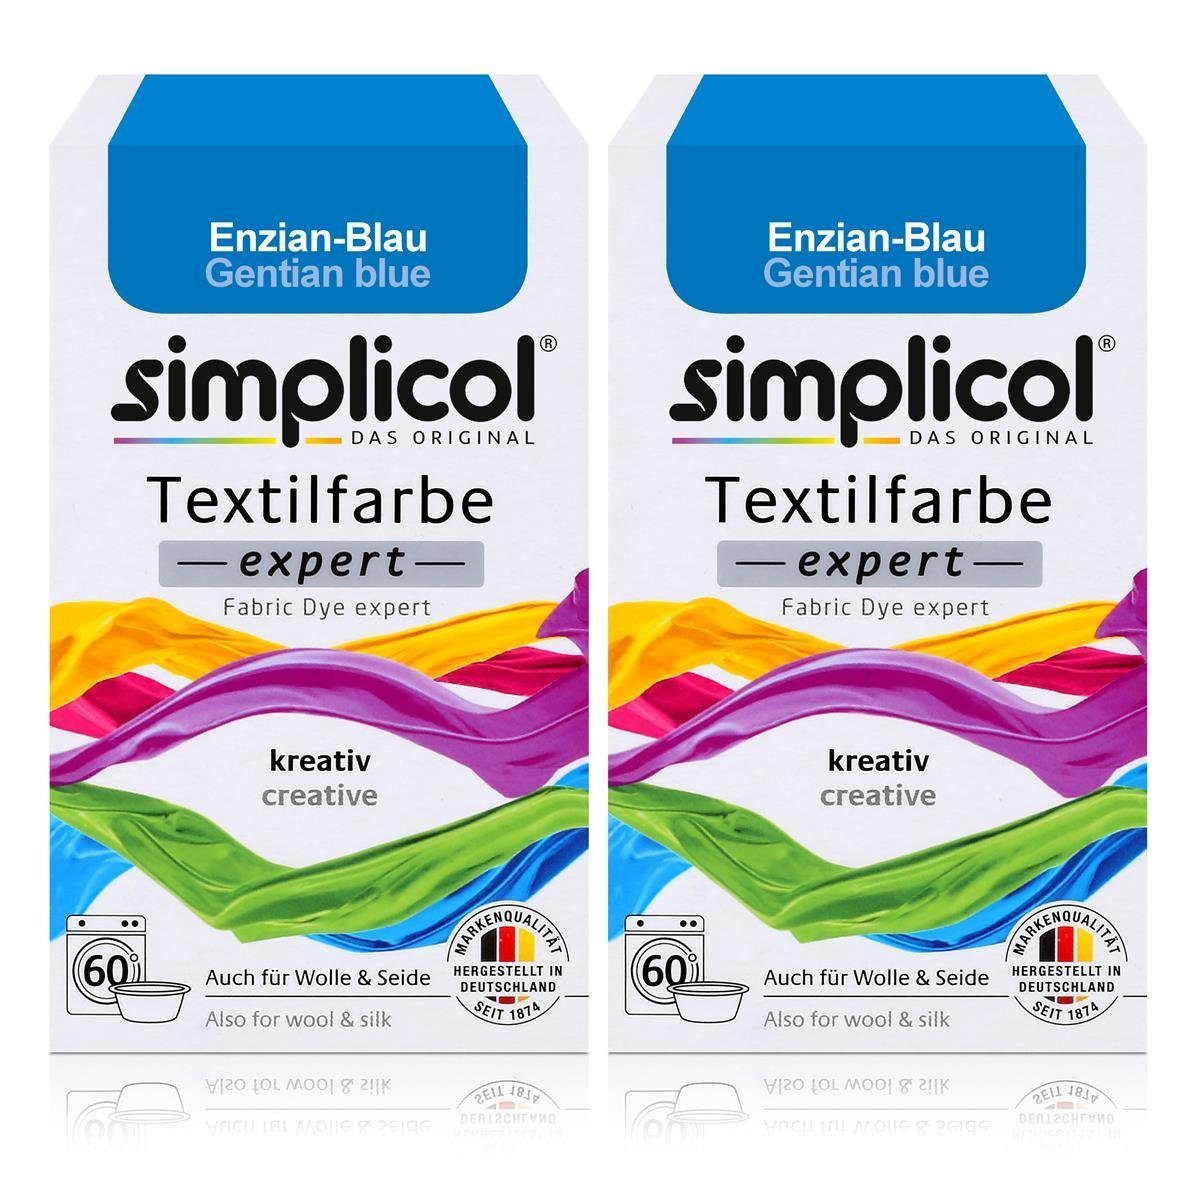 simplicol Textilfarbe Simplicol Textilfarbe expert Enzian-Blau 150g - Farbe zum Färben (2er